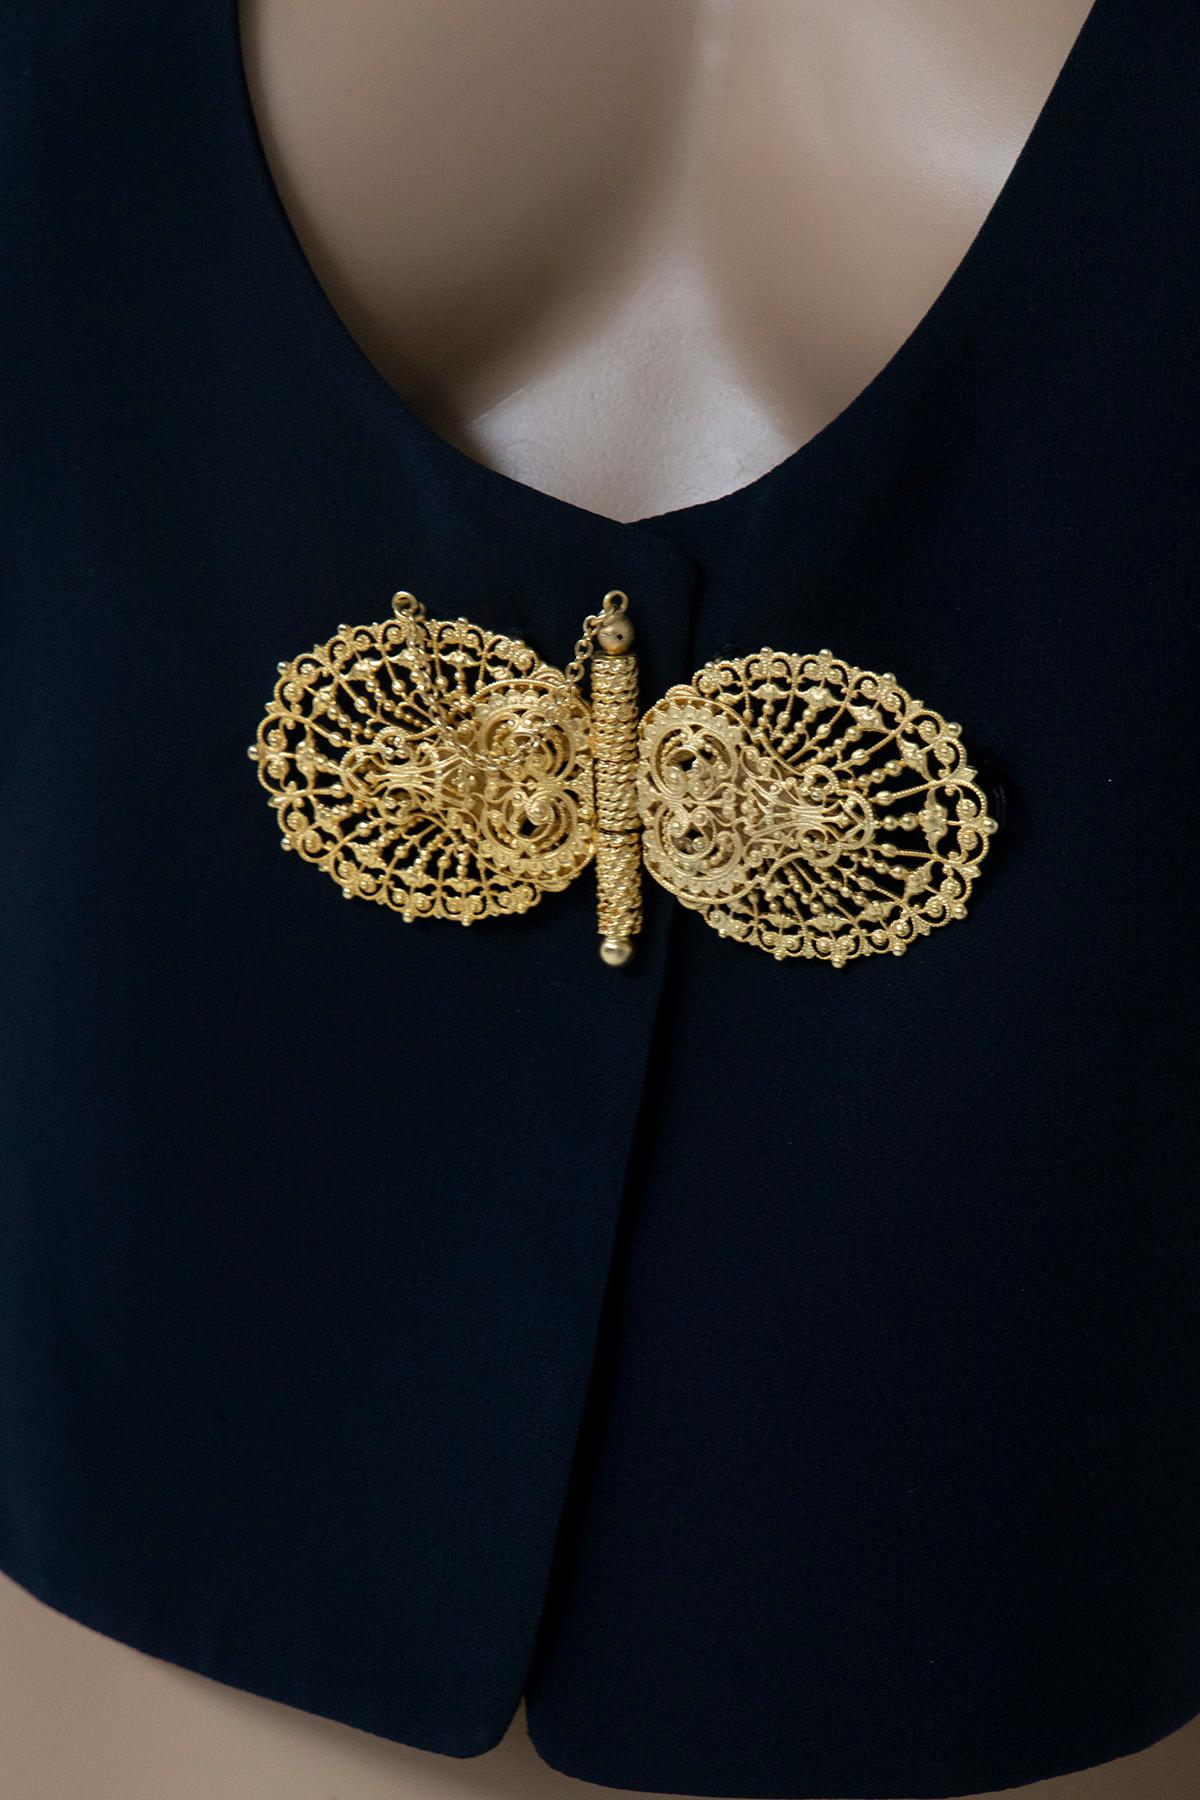 Women's Gianfranco ferrè Studio 001 Cropped Jackets with jewel